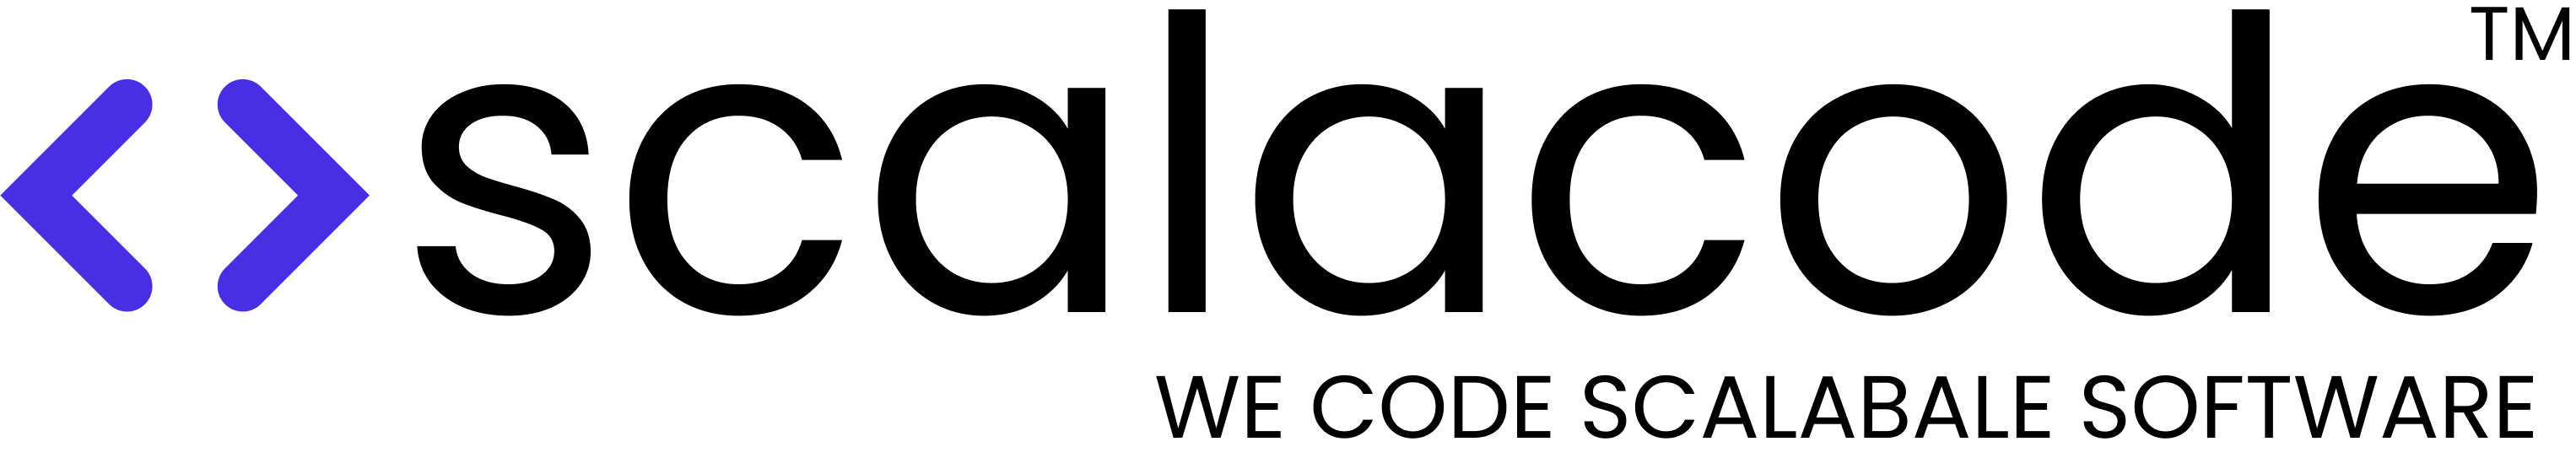 ScalaCode logo